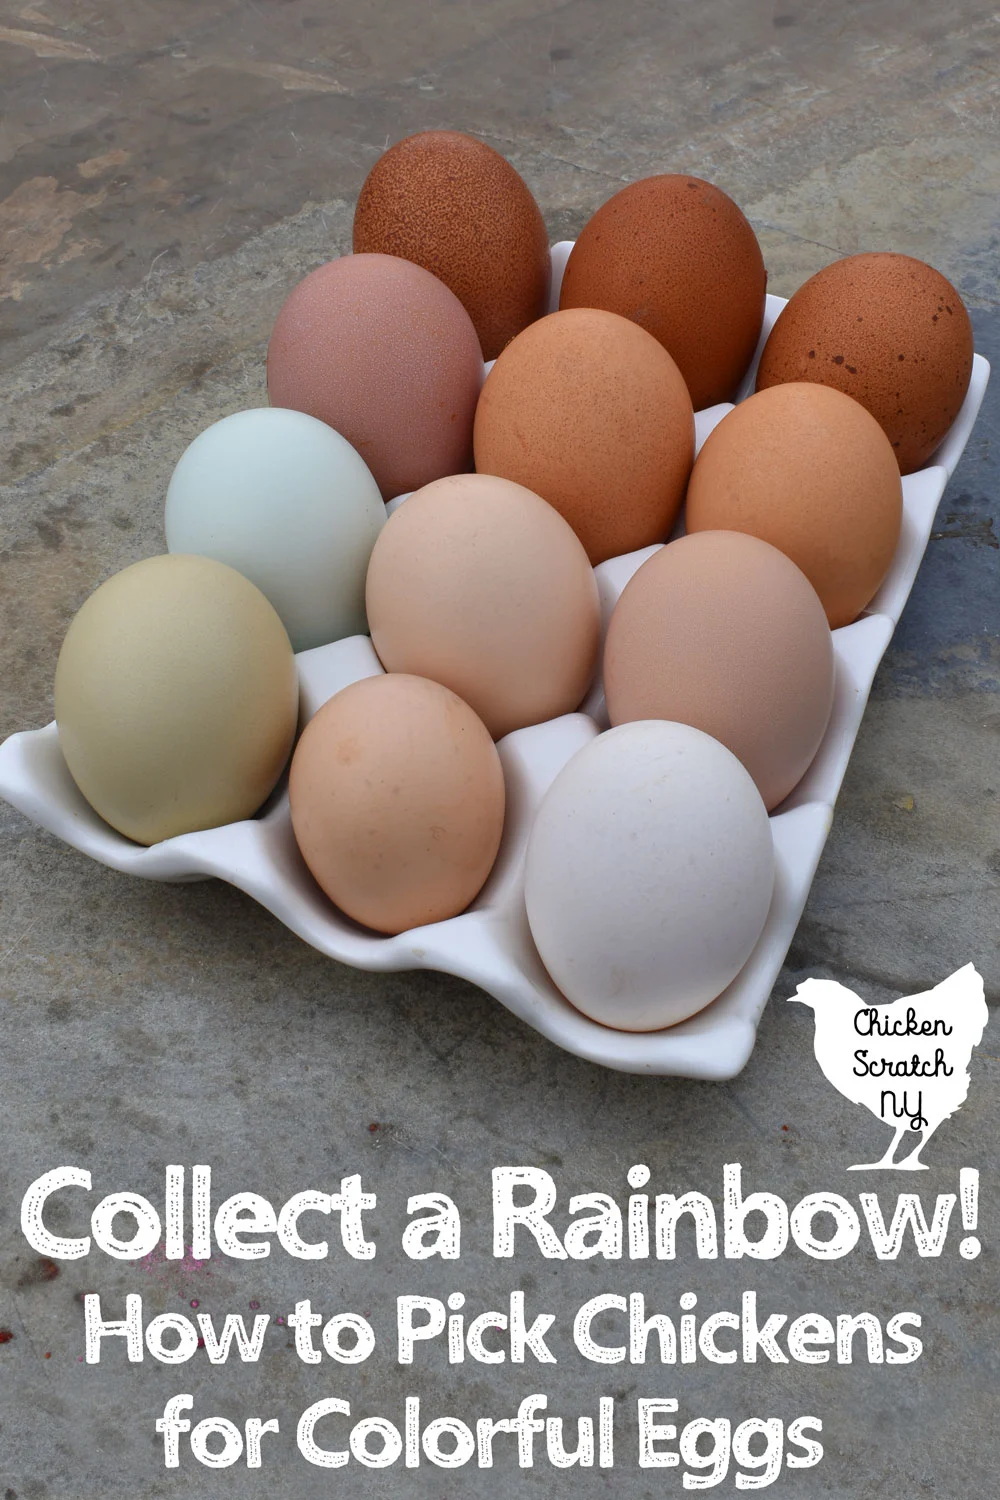 white ceramic egg holder filled with 12 fresh farm eggs in blue, green, tan, cream, white & dark brown